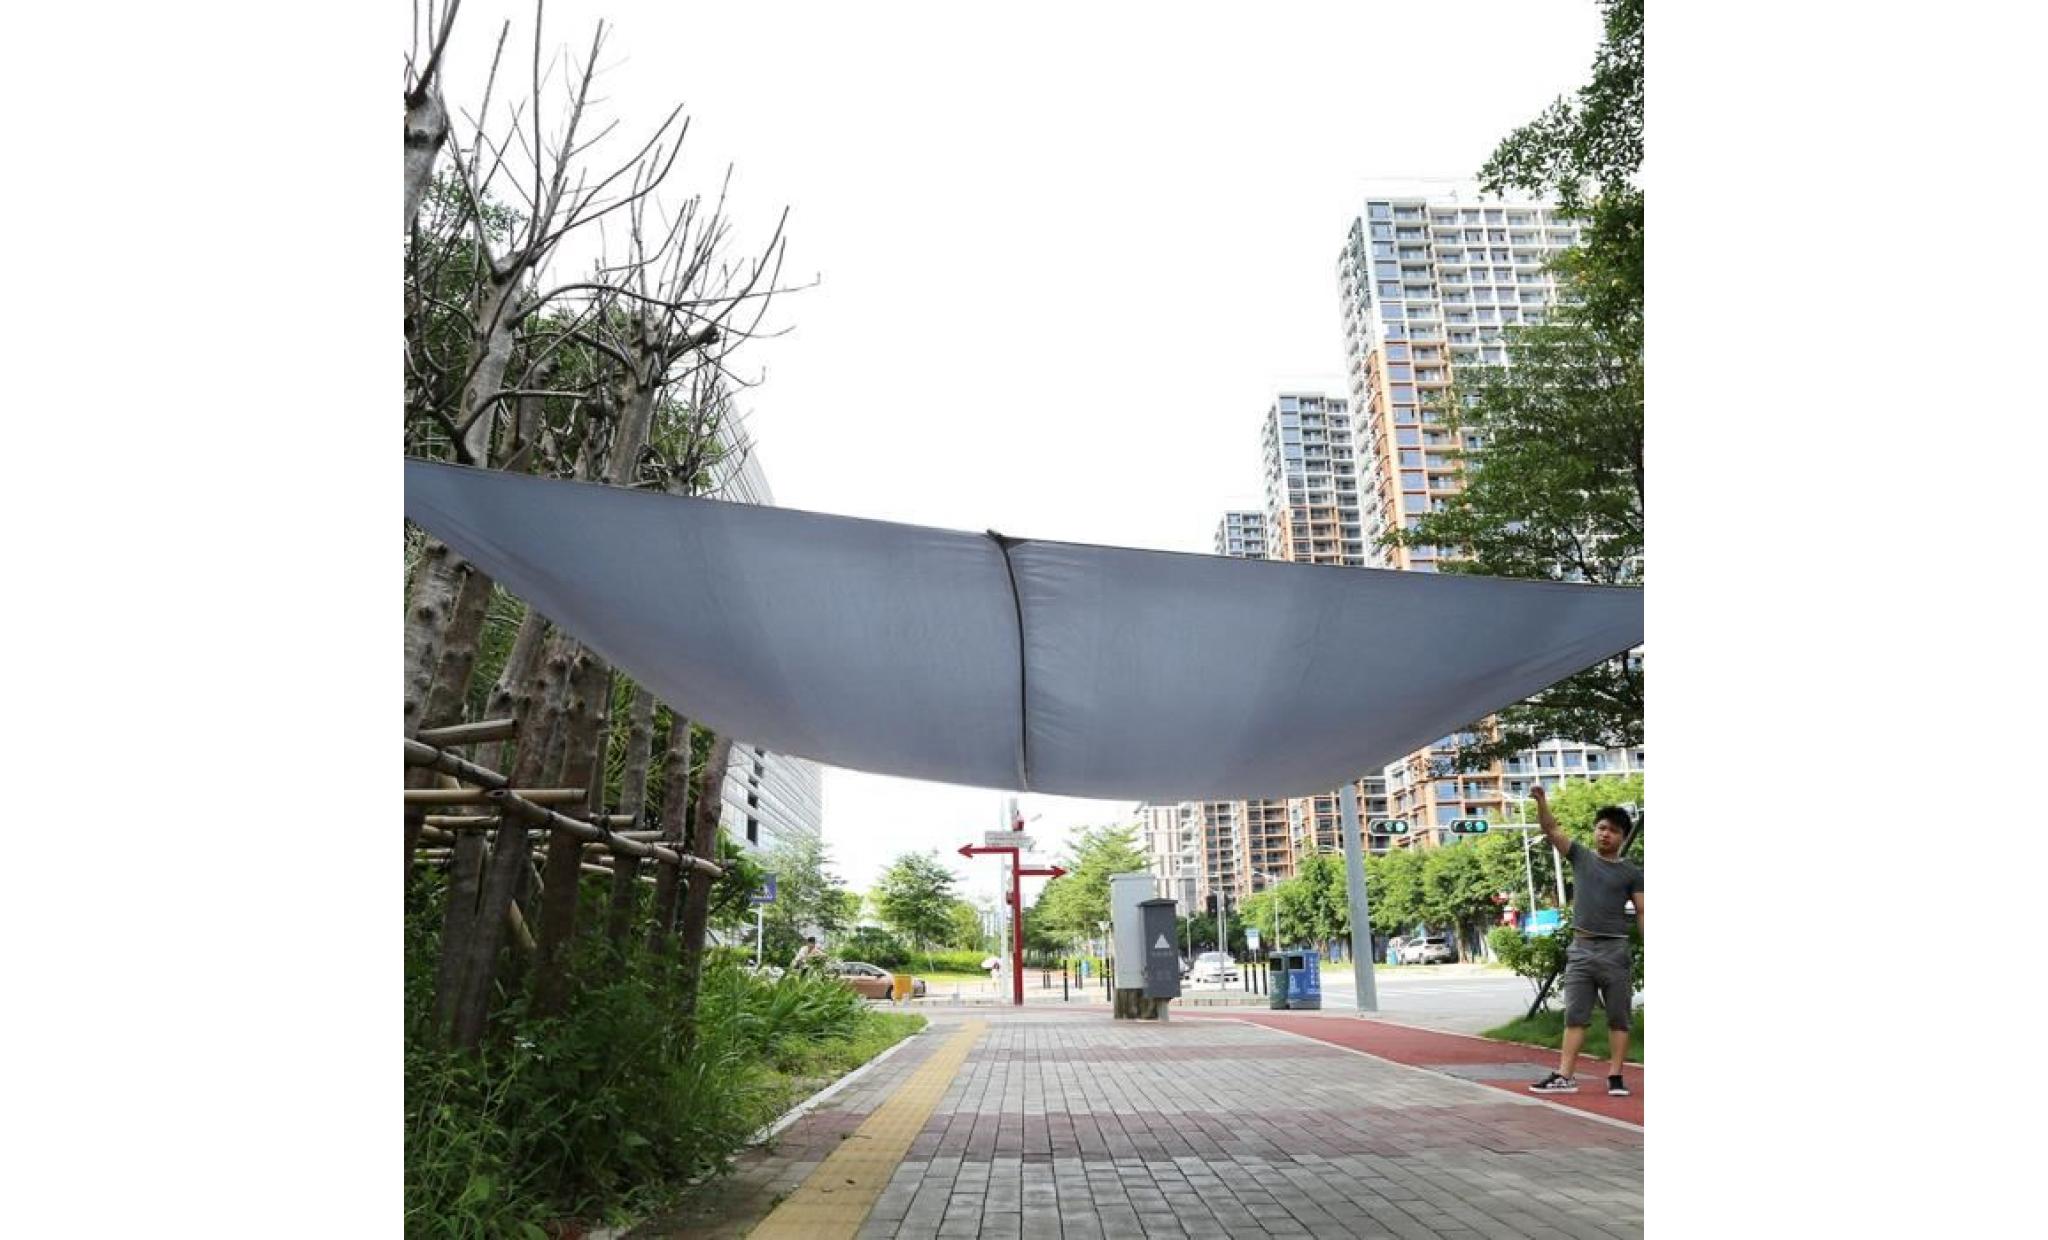 voile d’ombrage toile solaire taud de soleil  anti uv 3 x 4m gris  —yuyuan shop pas cher